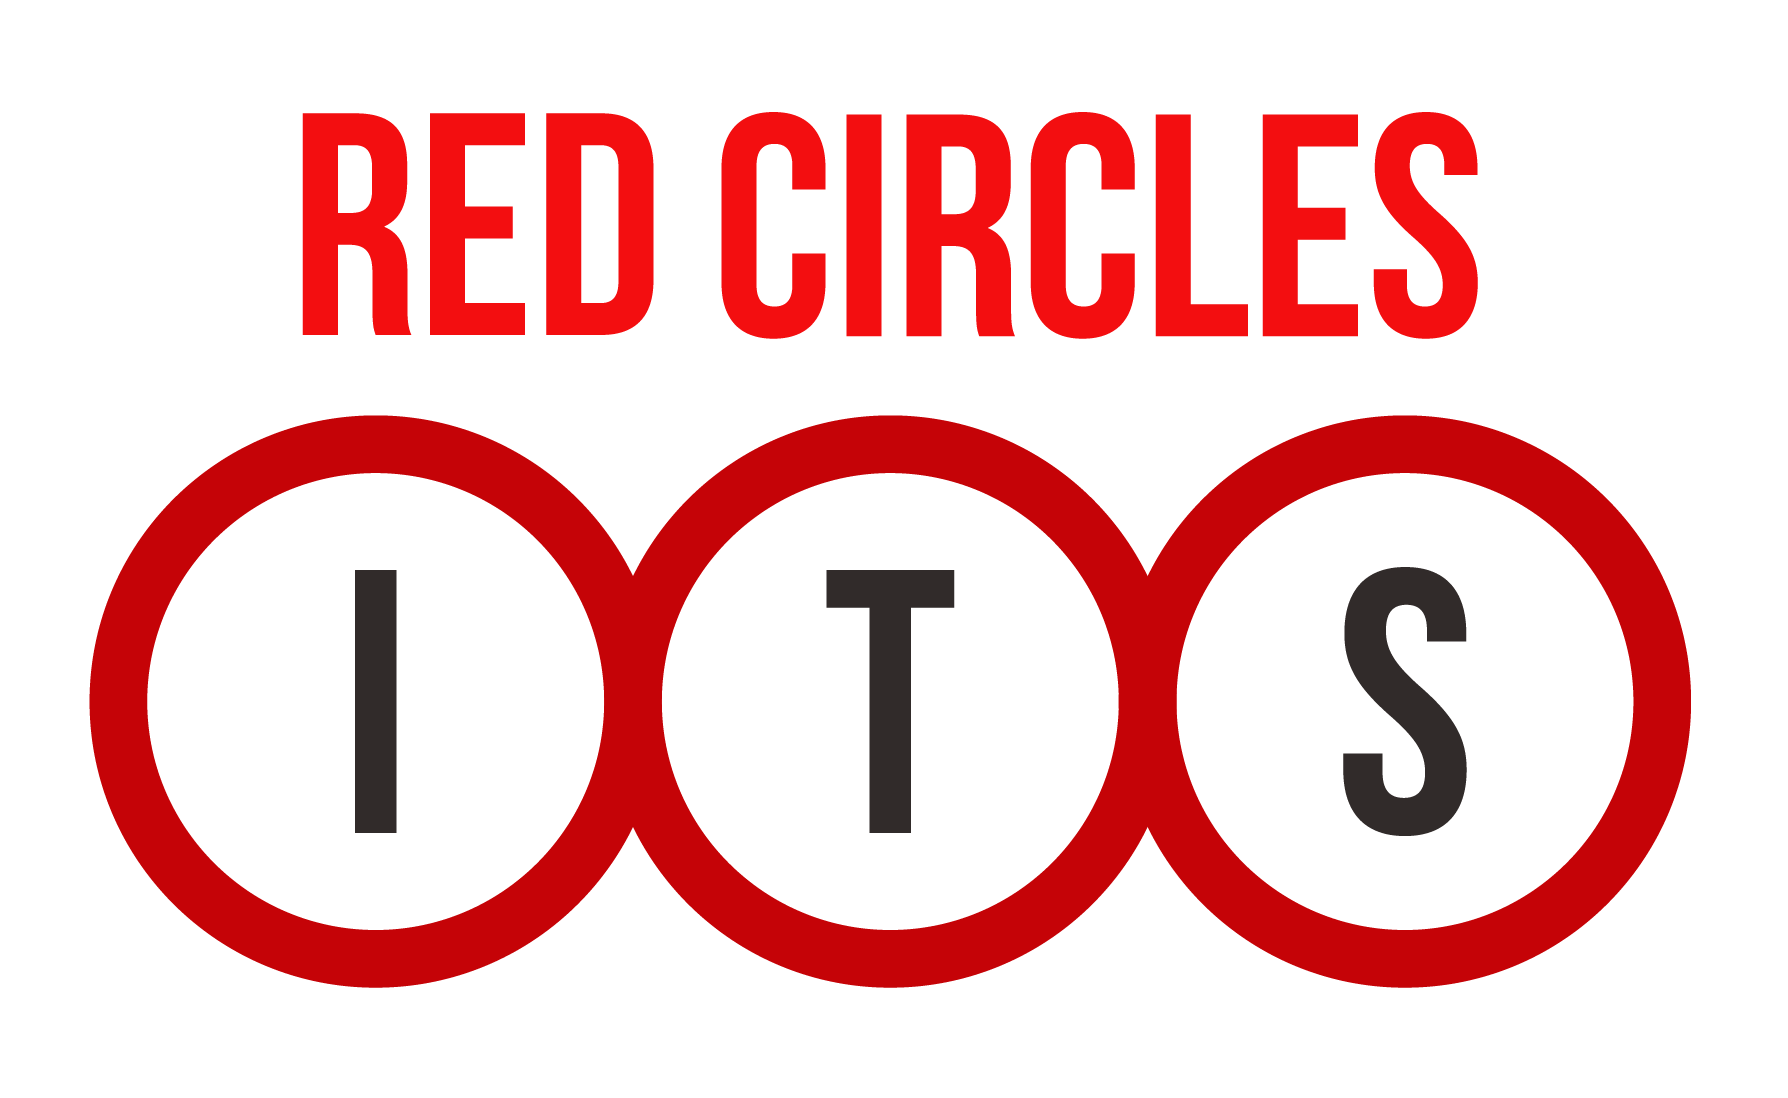 Red Circles ITS Logo